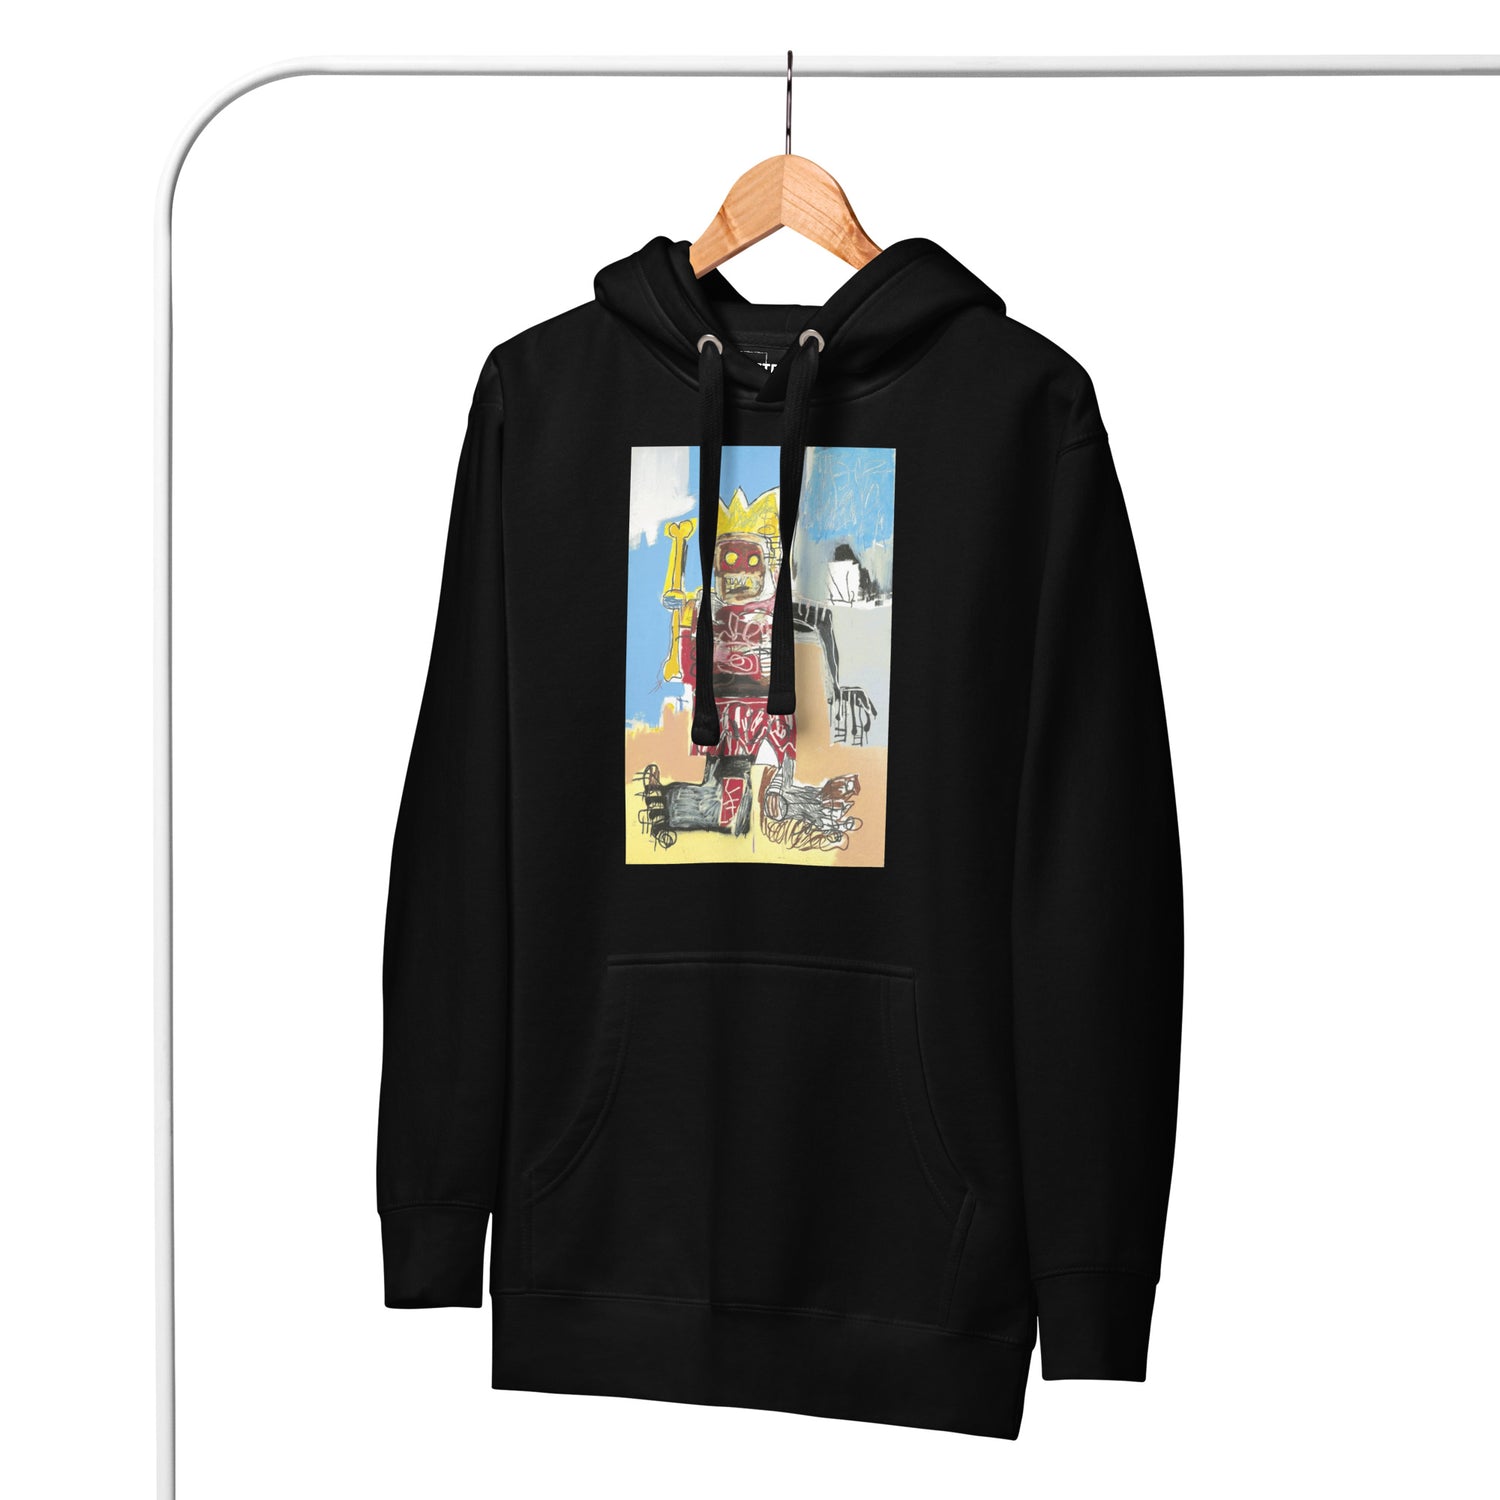 Jean-Michel Basquiat "Untitled" Artwork Printed Premium Streetwear Sweatshirt Hoodie Black